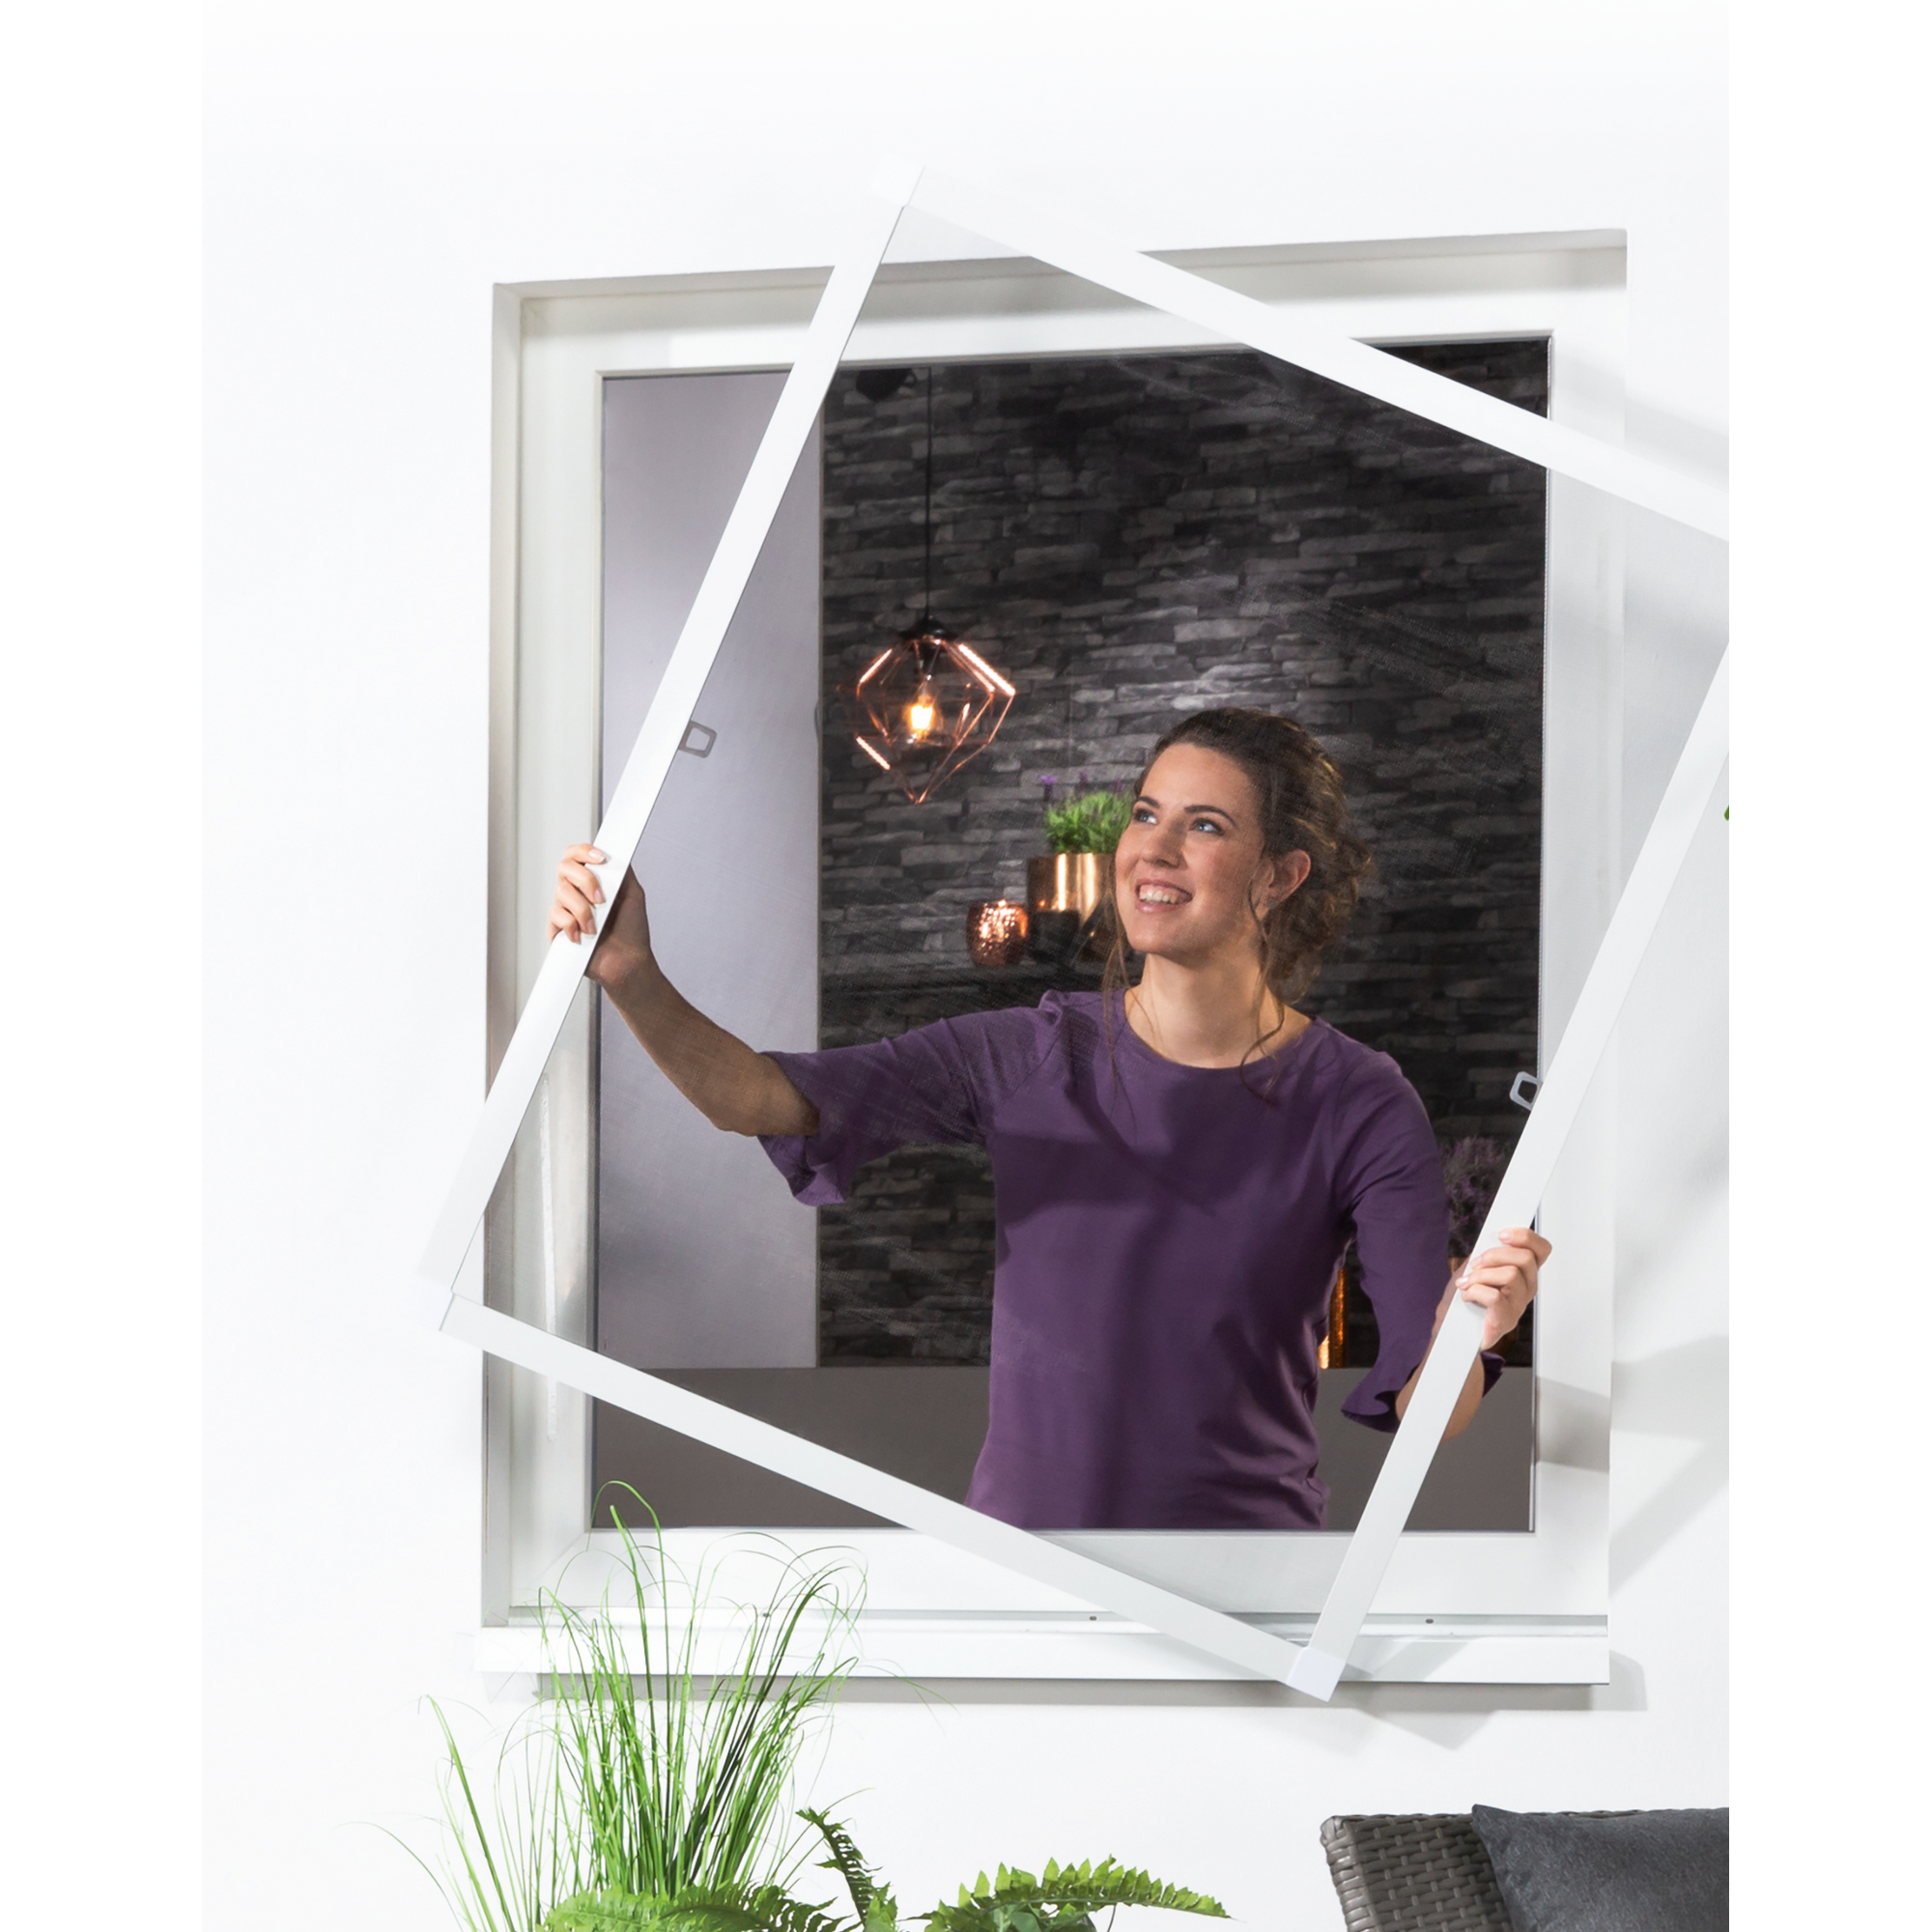 Alu-Flachbausatz für Fenster 130 x 150 cm weiß + product picture